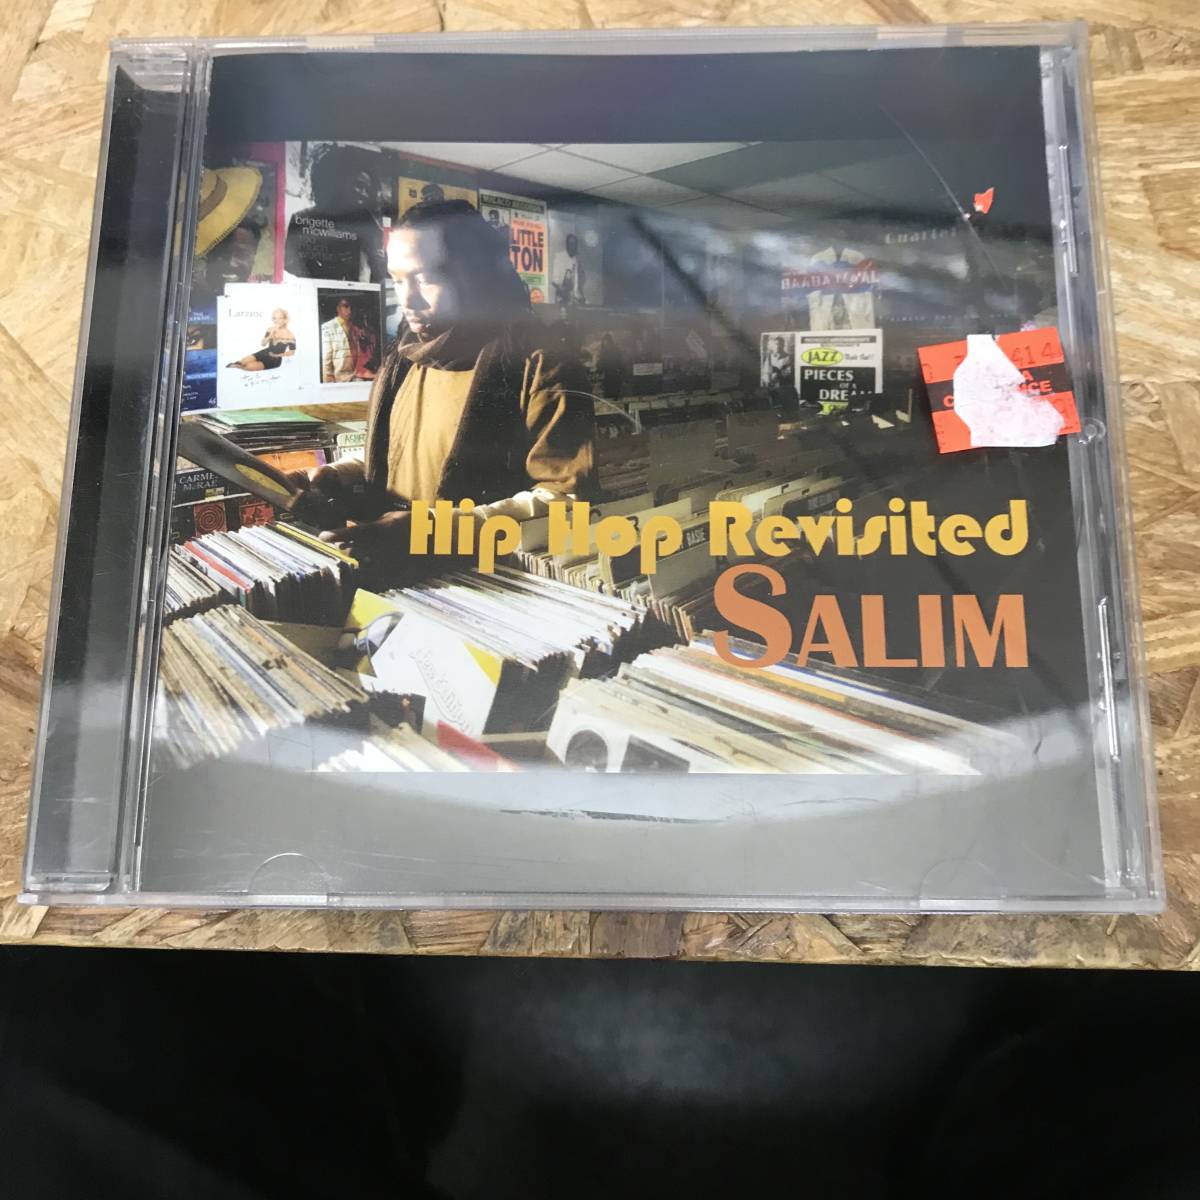 ● POPS,ROCK HIP HOP REVISITED SALIM アルバム,INDIE CD 中古品_画像1